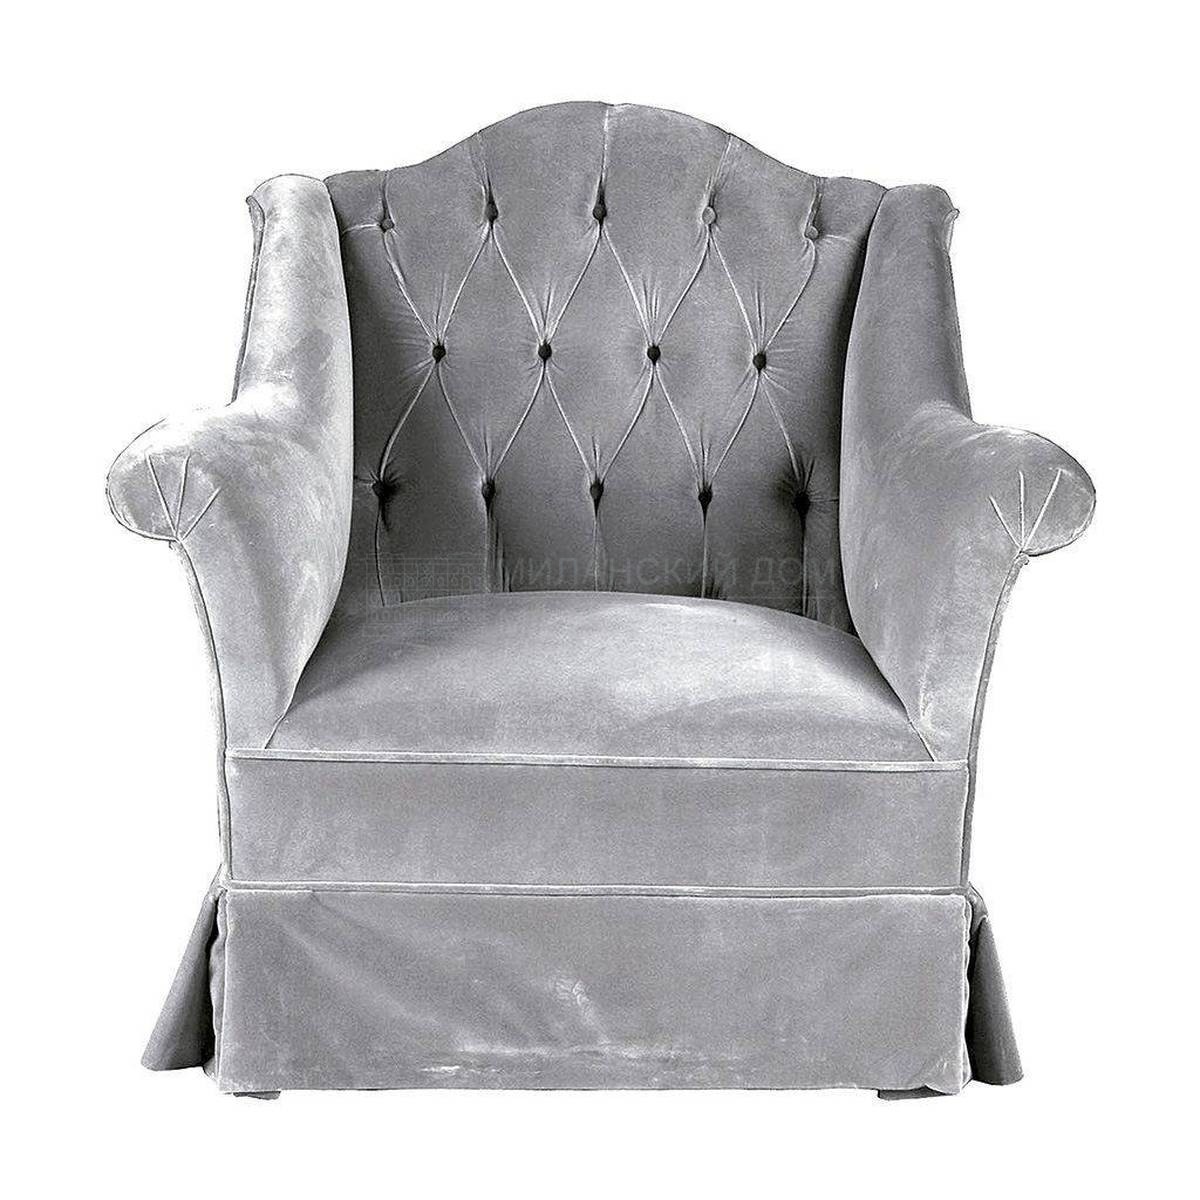 Кресло Z-8154 armchair из Испании фабрики GUADARTE